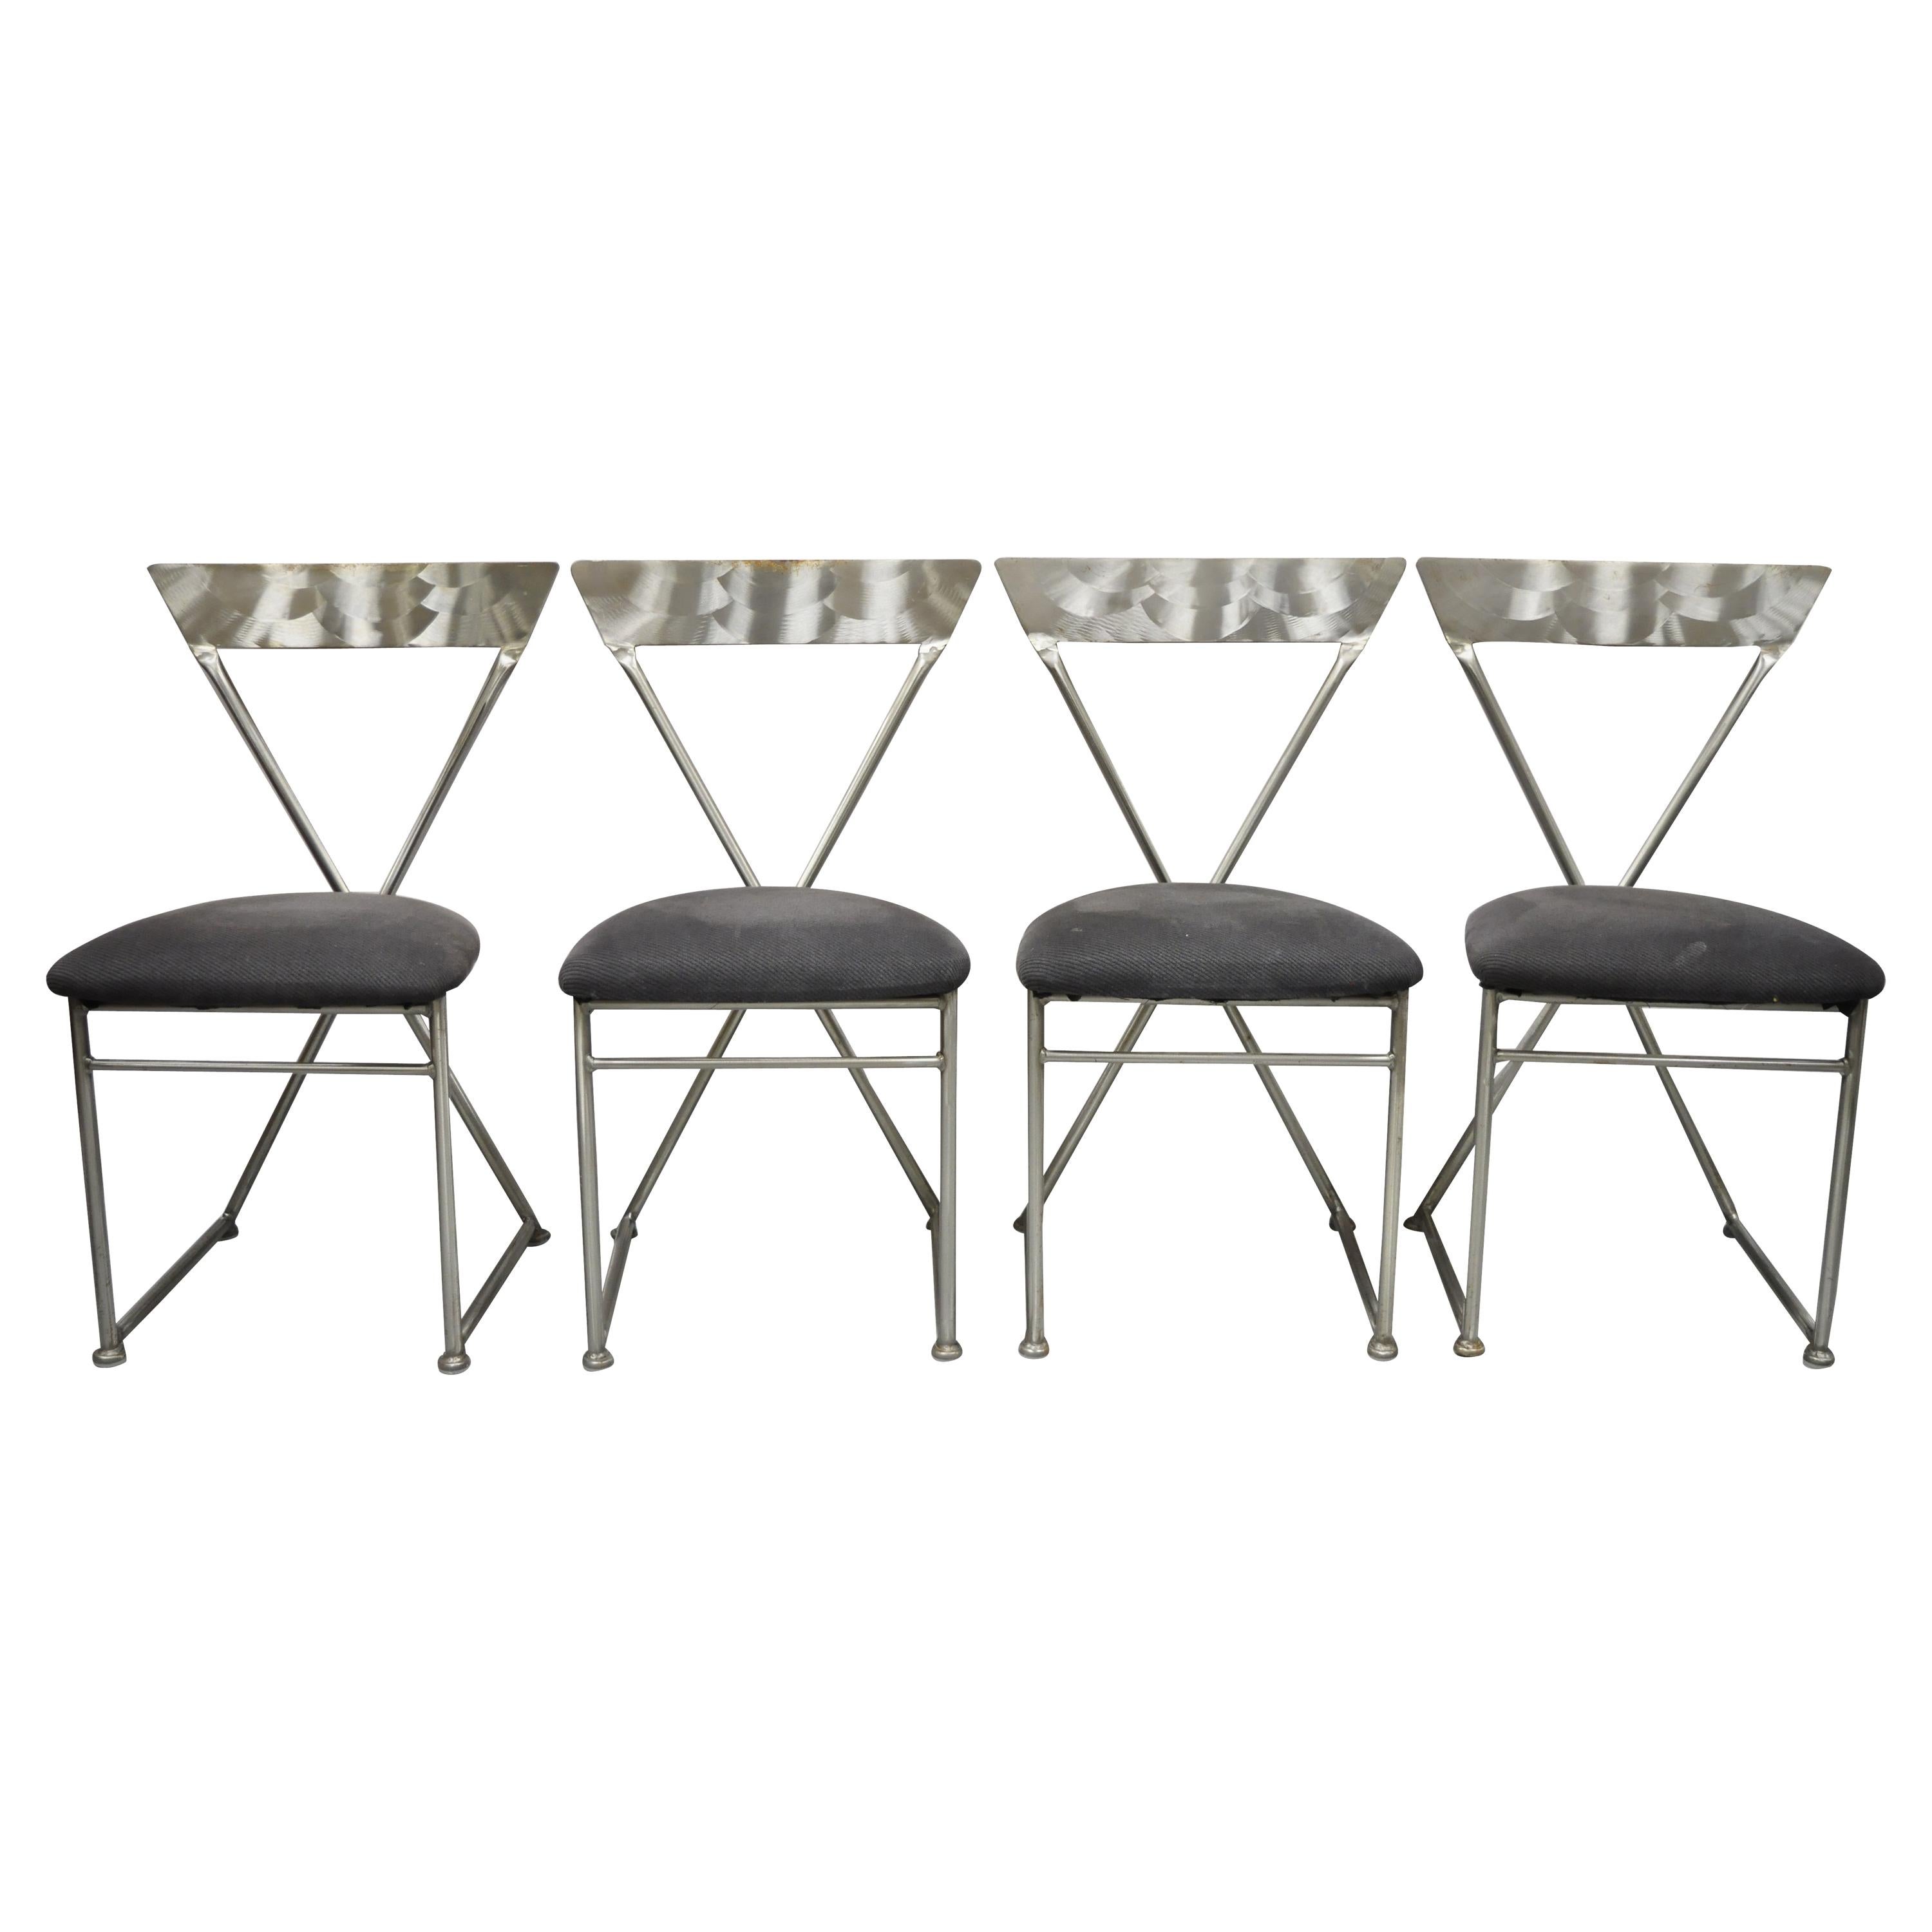 Shaver Howard Italienische modernistische Esszimmerstühle aus gebürstetem Stahl und Metall, 4er-Set